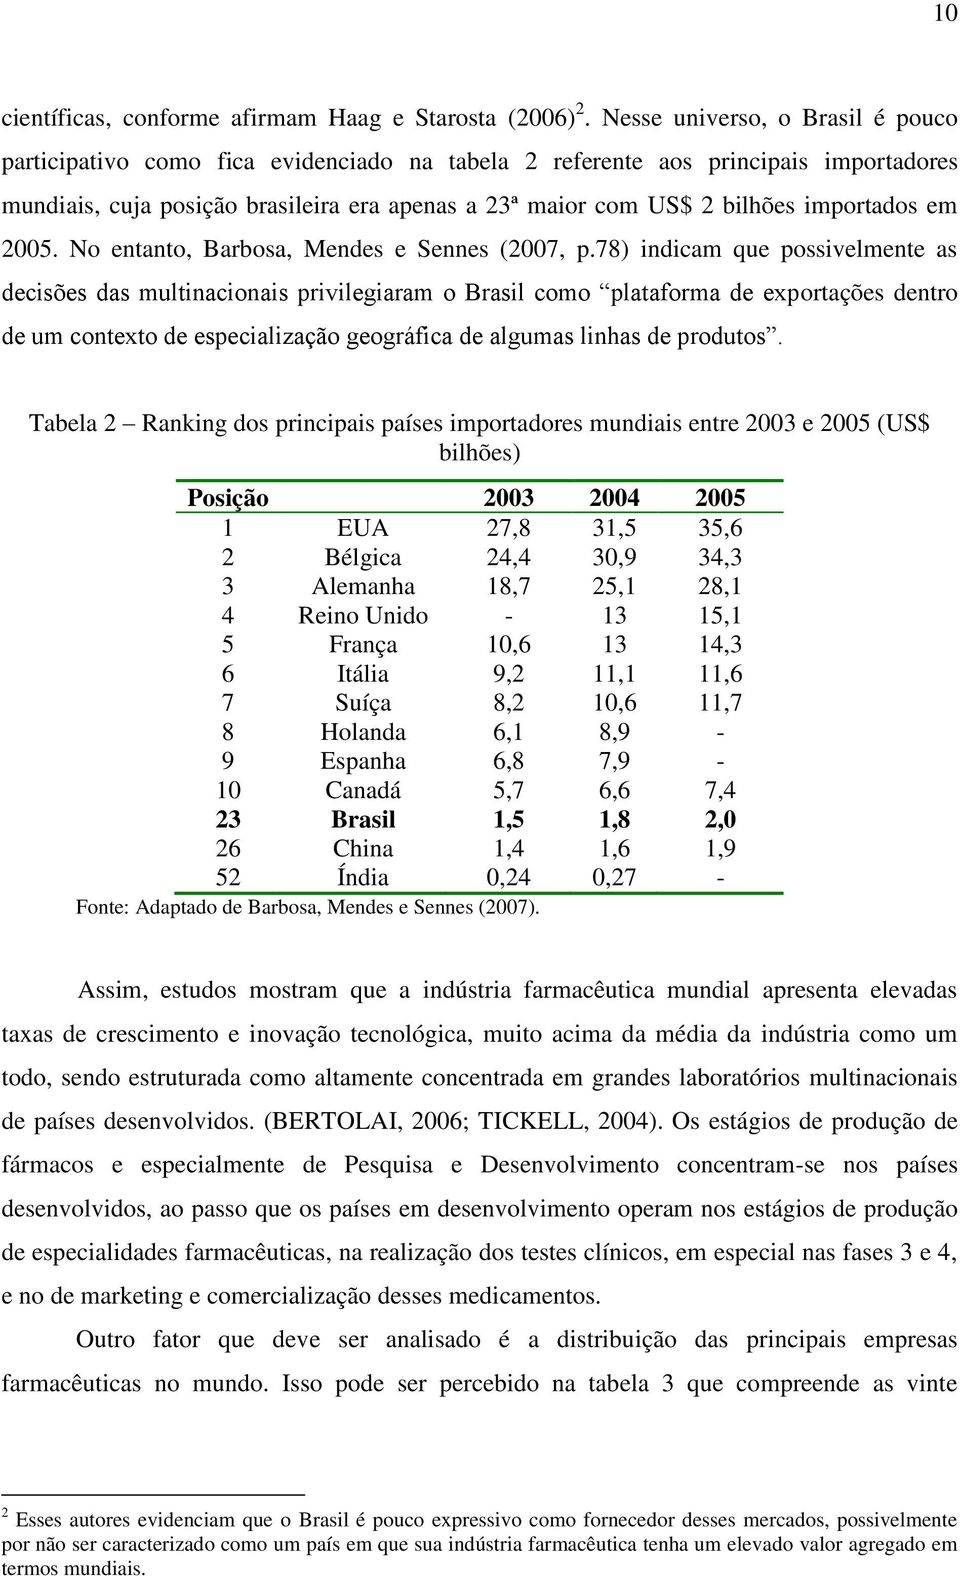 importados em 2005. No entanto, Barbosa, Mendes e Sennes (2007, p.